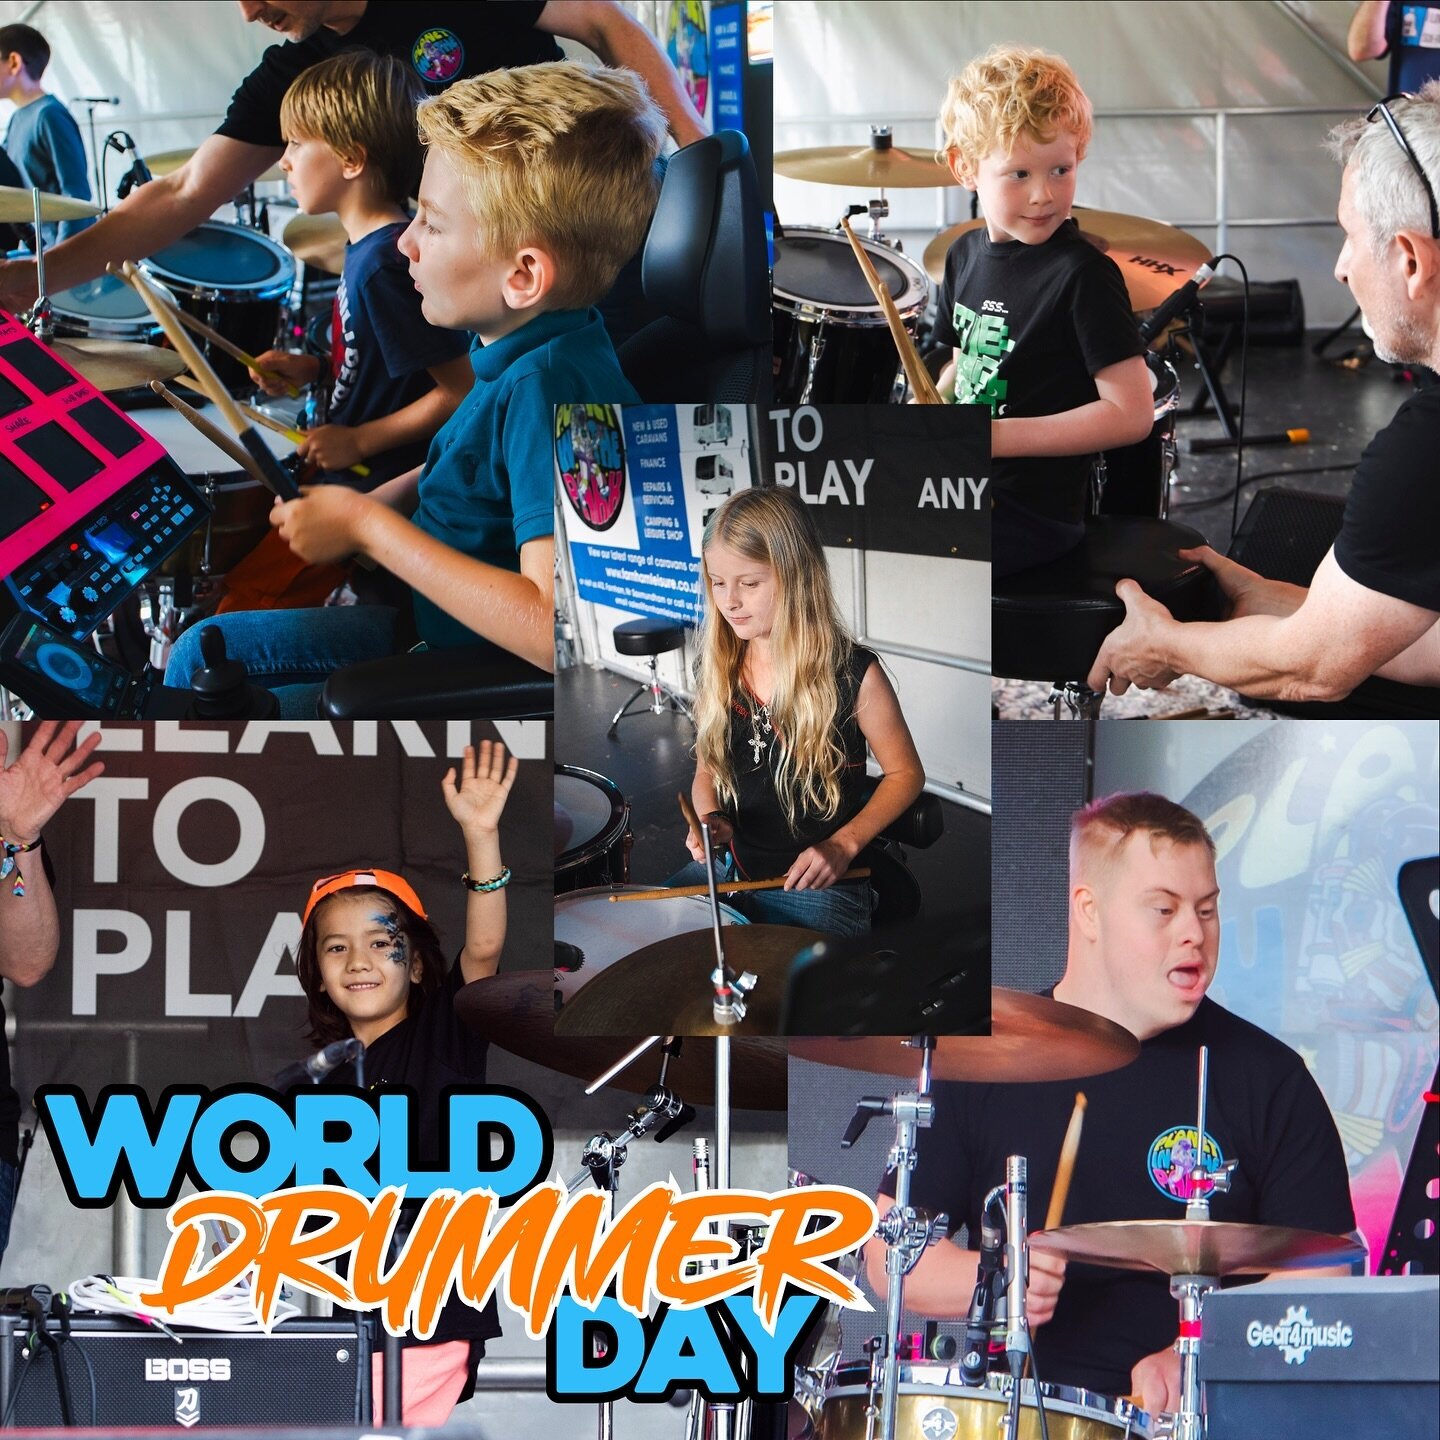 Happy World Drummer&rsquo;s Day!
#worlddrummersday